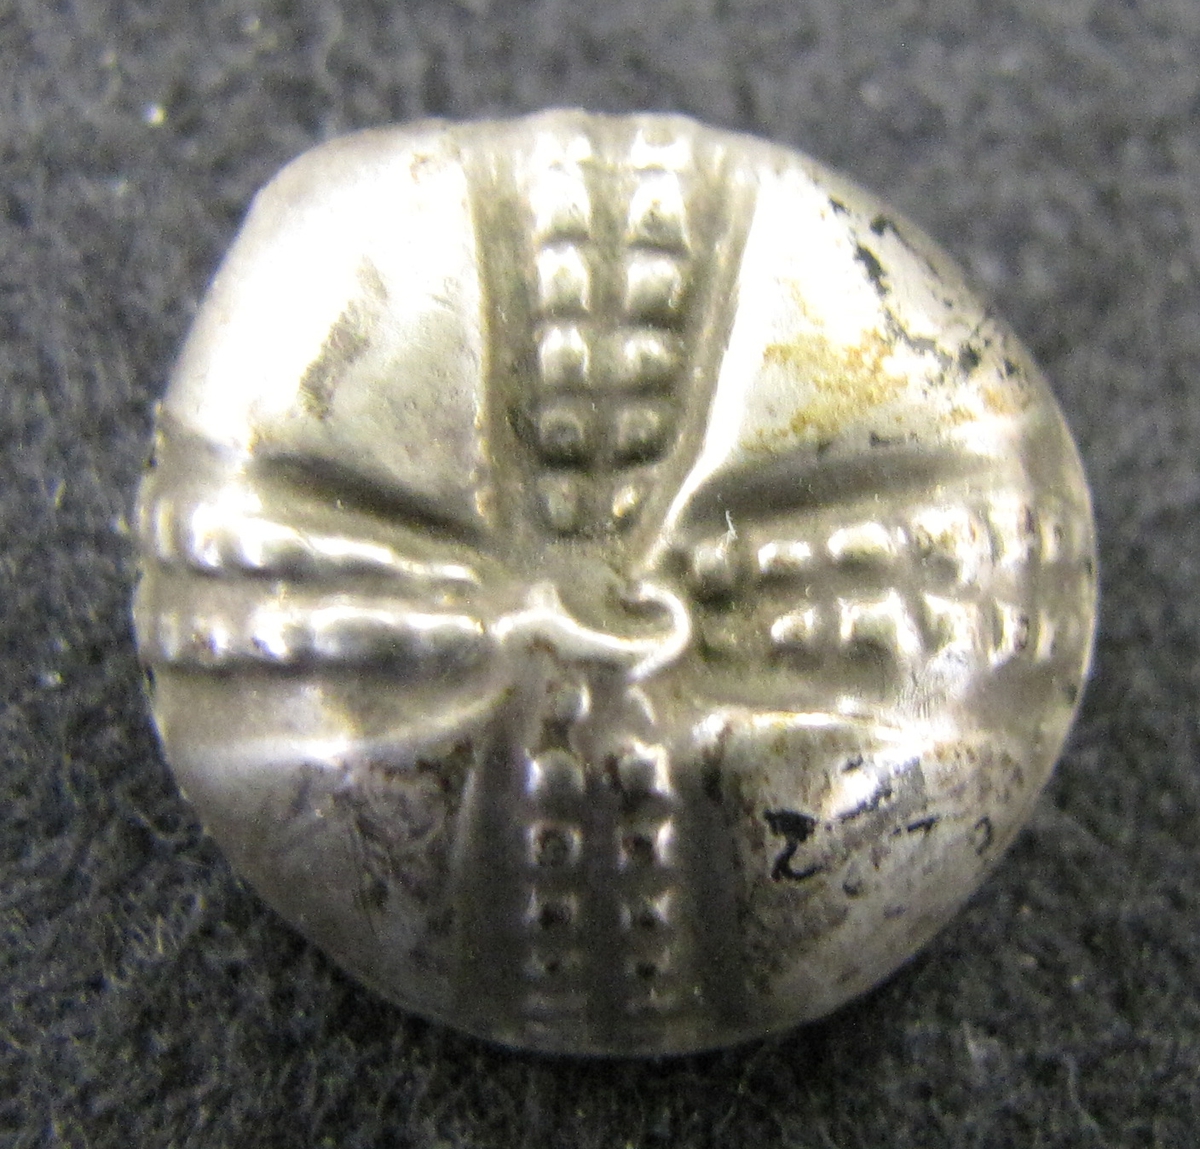 Mindre knapp med ögla av silver, korsformigt ornerad på översidan. Från trakten av gamla Lödöse.